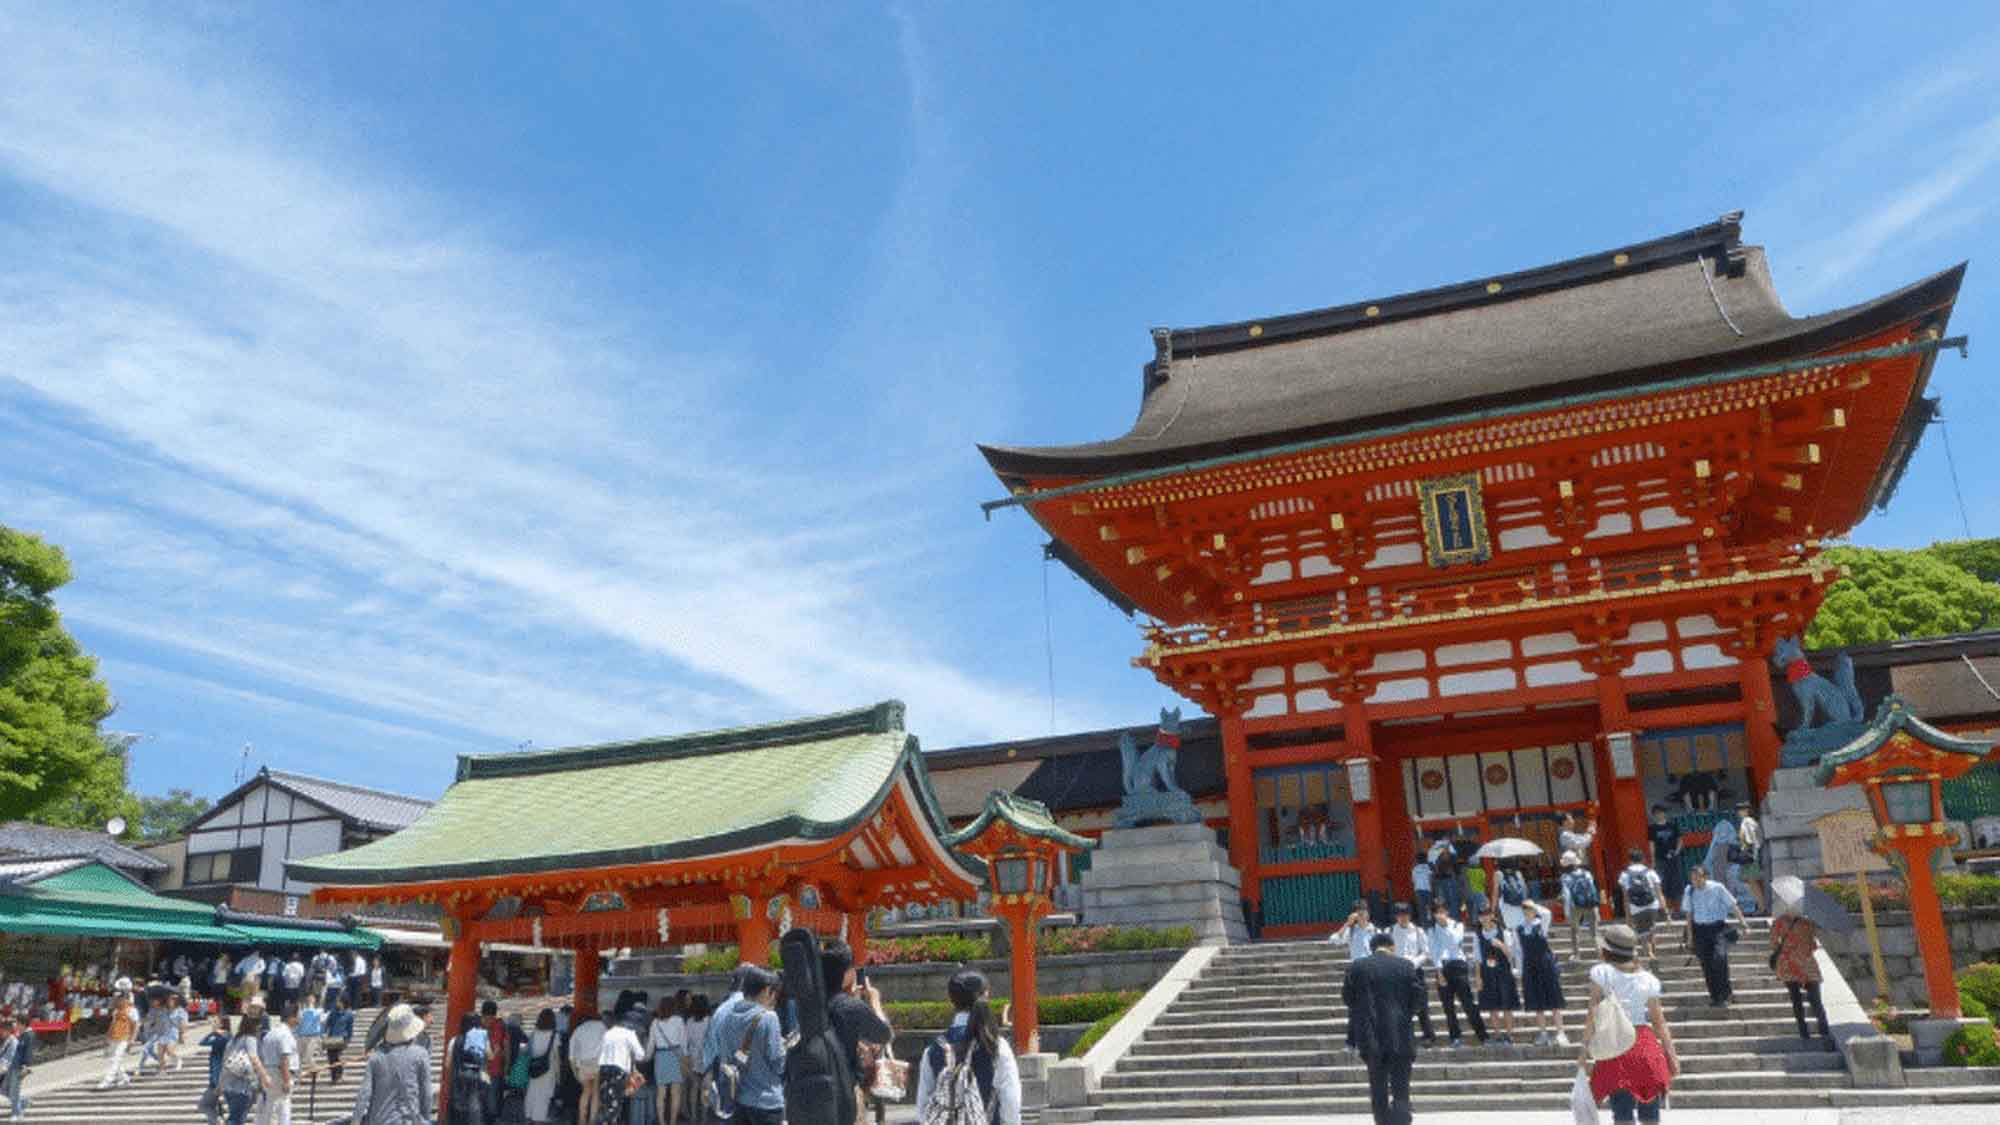 【京都・伏見稲荷大社】京都観光の代名詞的な朱塗りの「千本鳥居」は有名です。ホテルから約1時間30分。